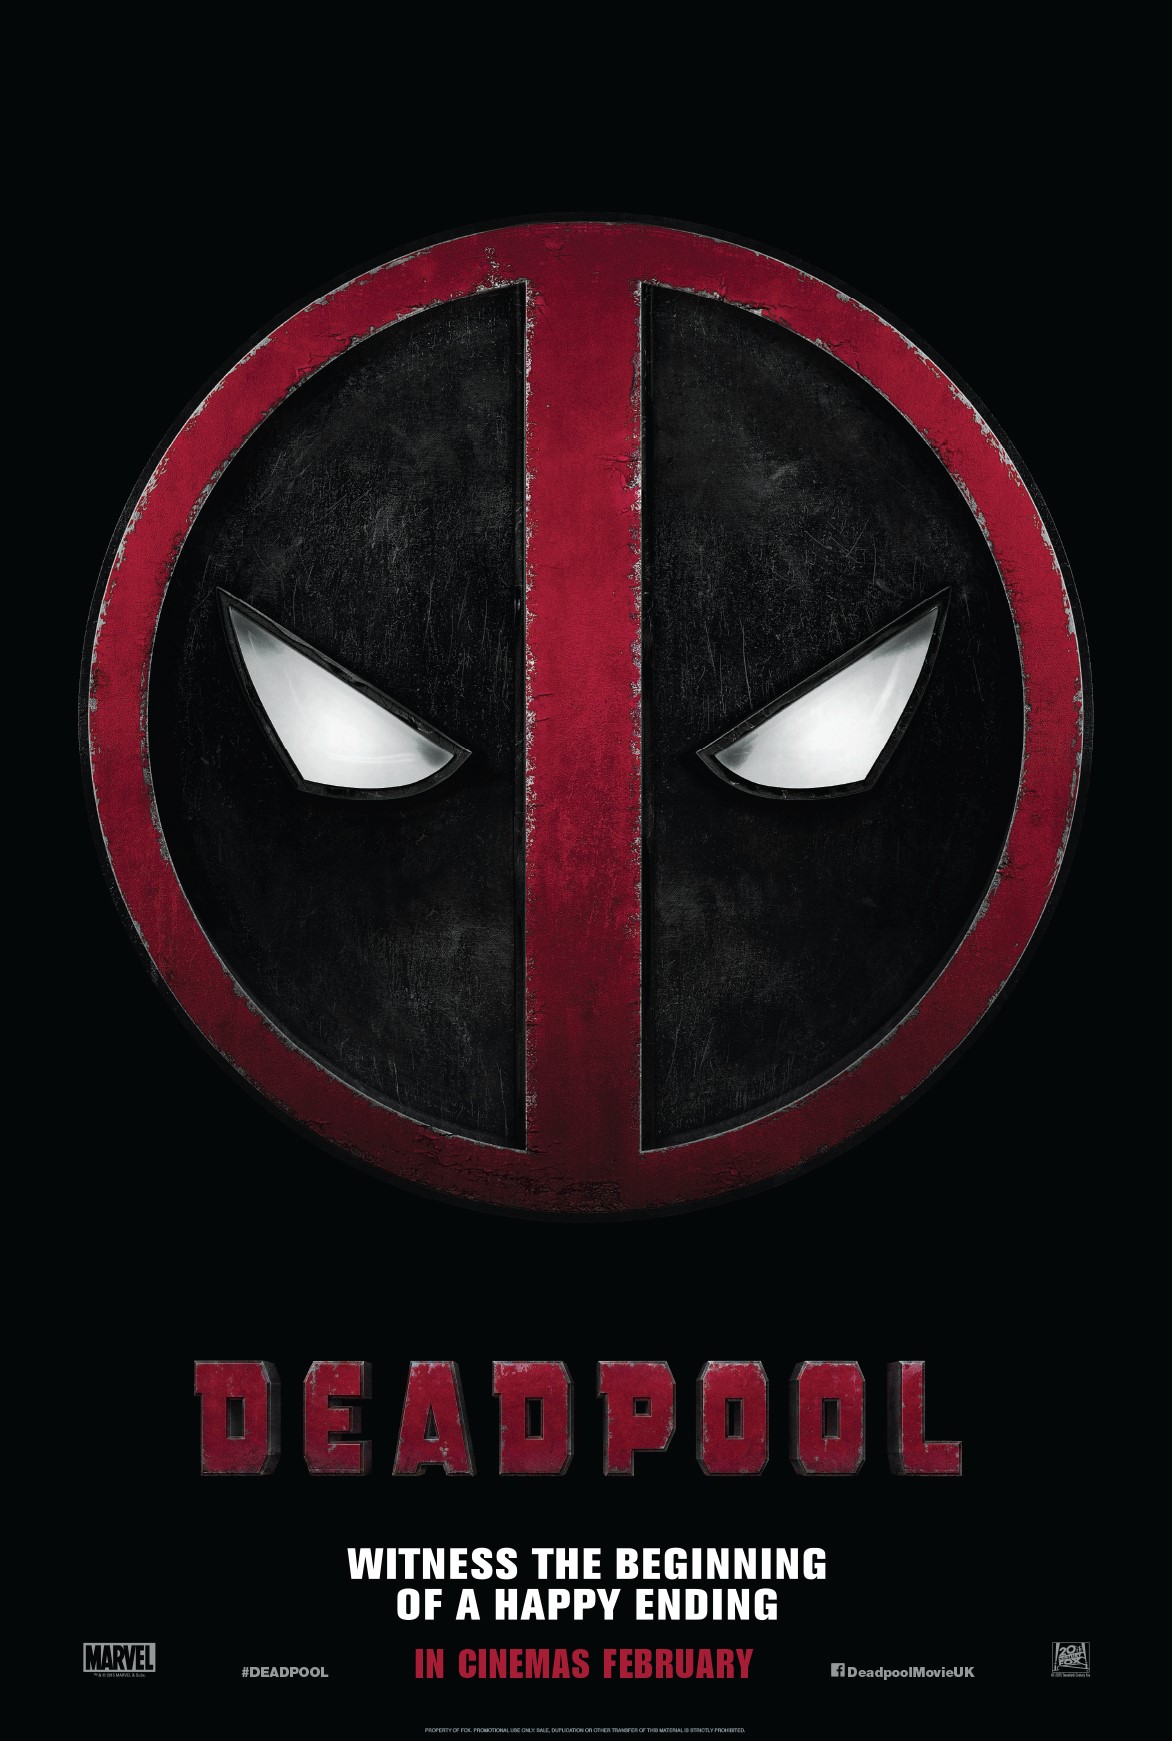 Deadpool logo poster